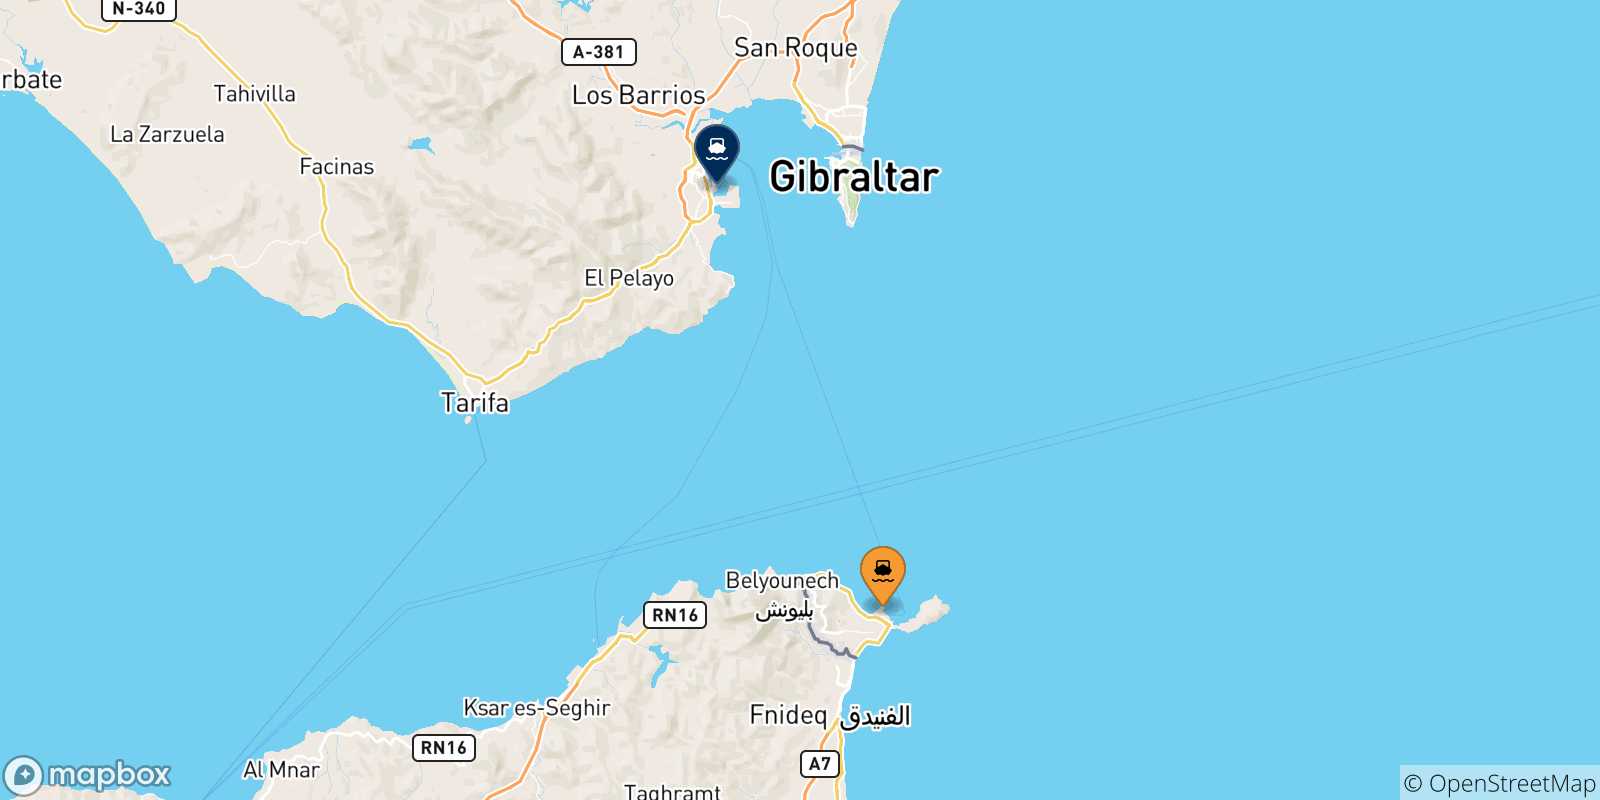 Mappa delle possibili rotte tra Ceuta e la Spagna